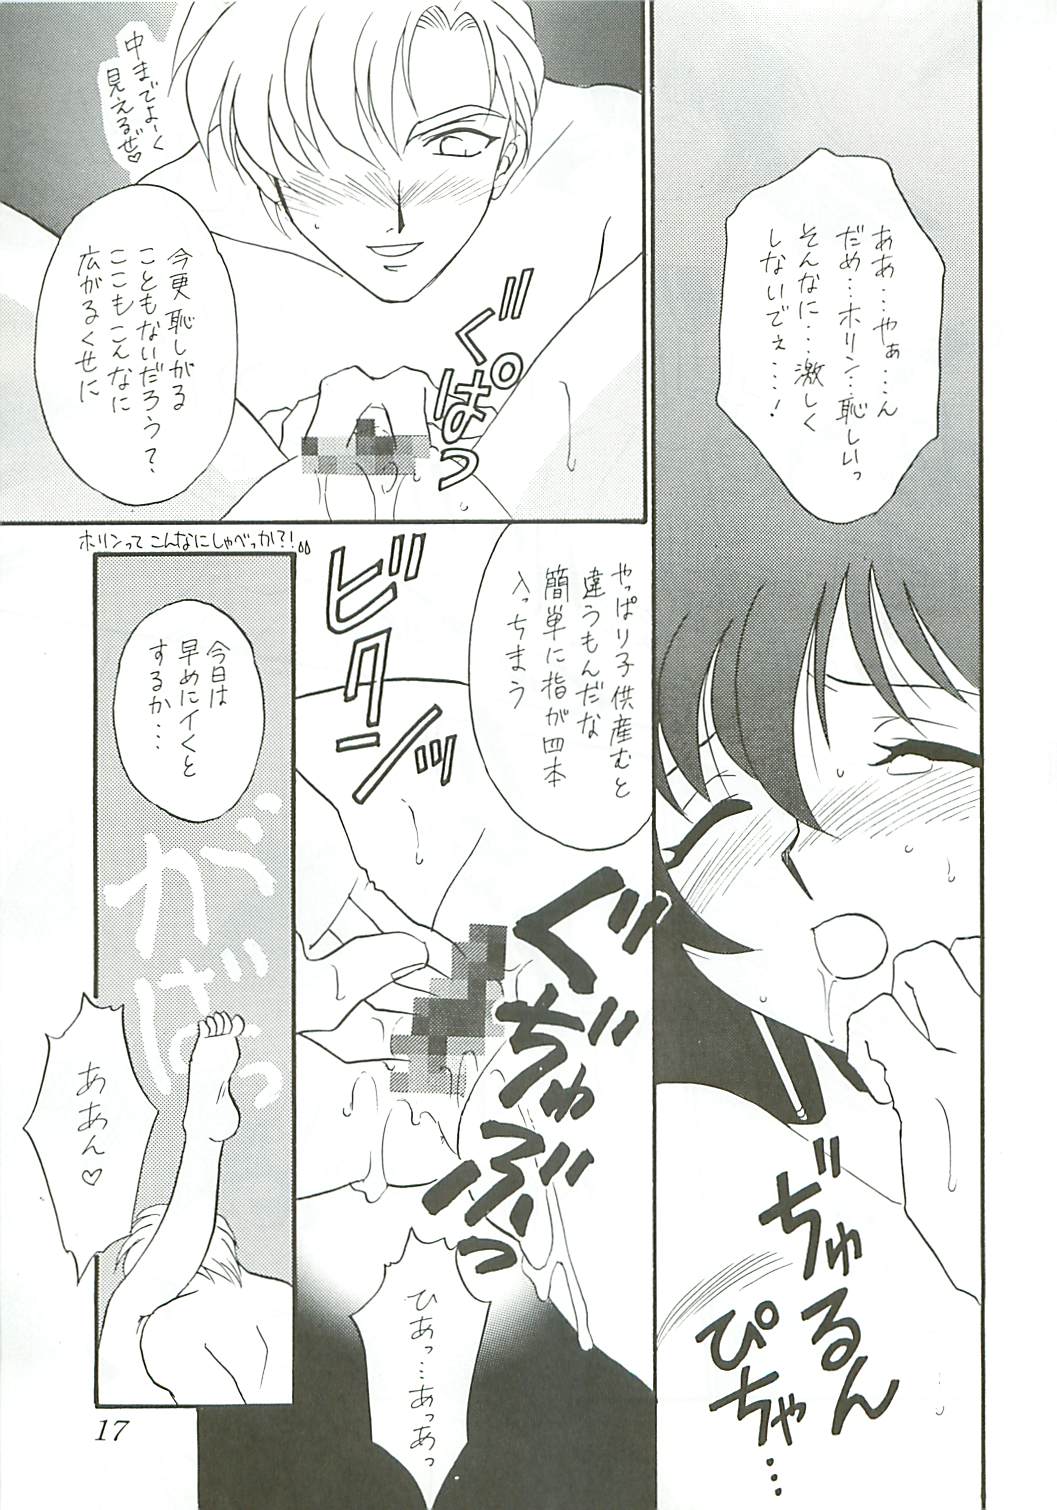 [DARK WATER] Seisen no keifu page 17 full